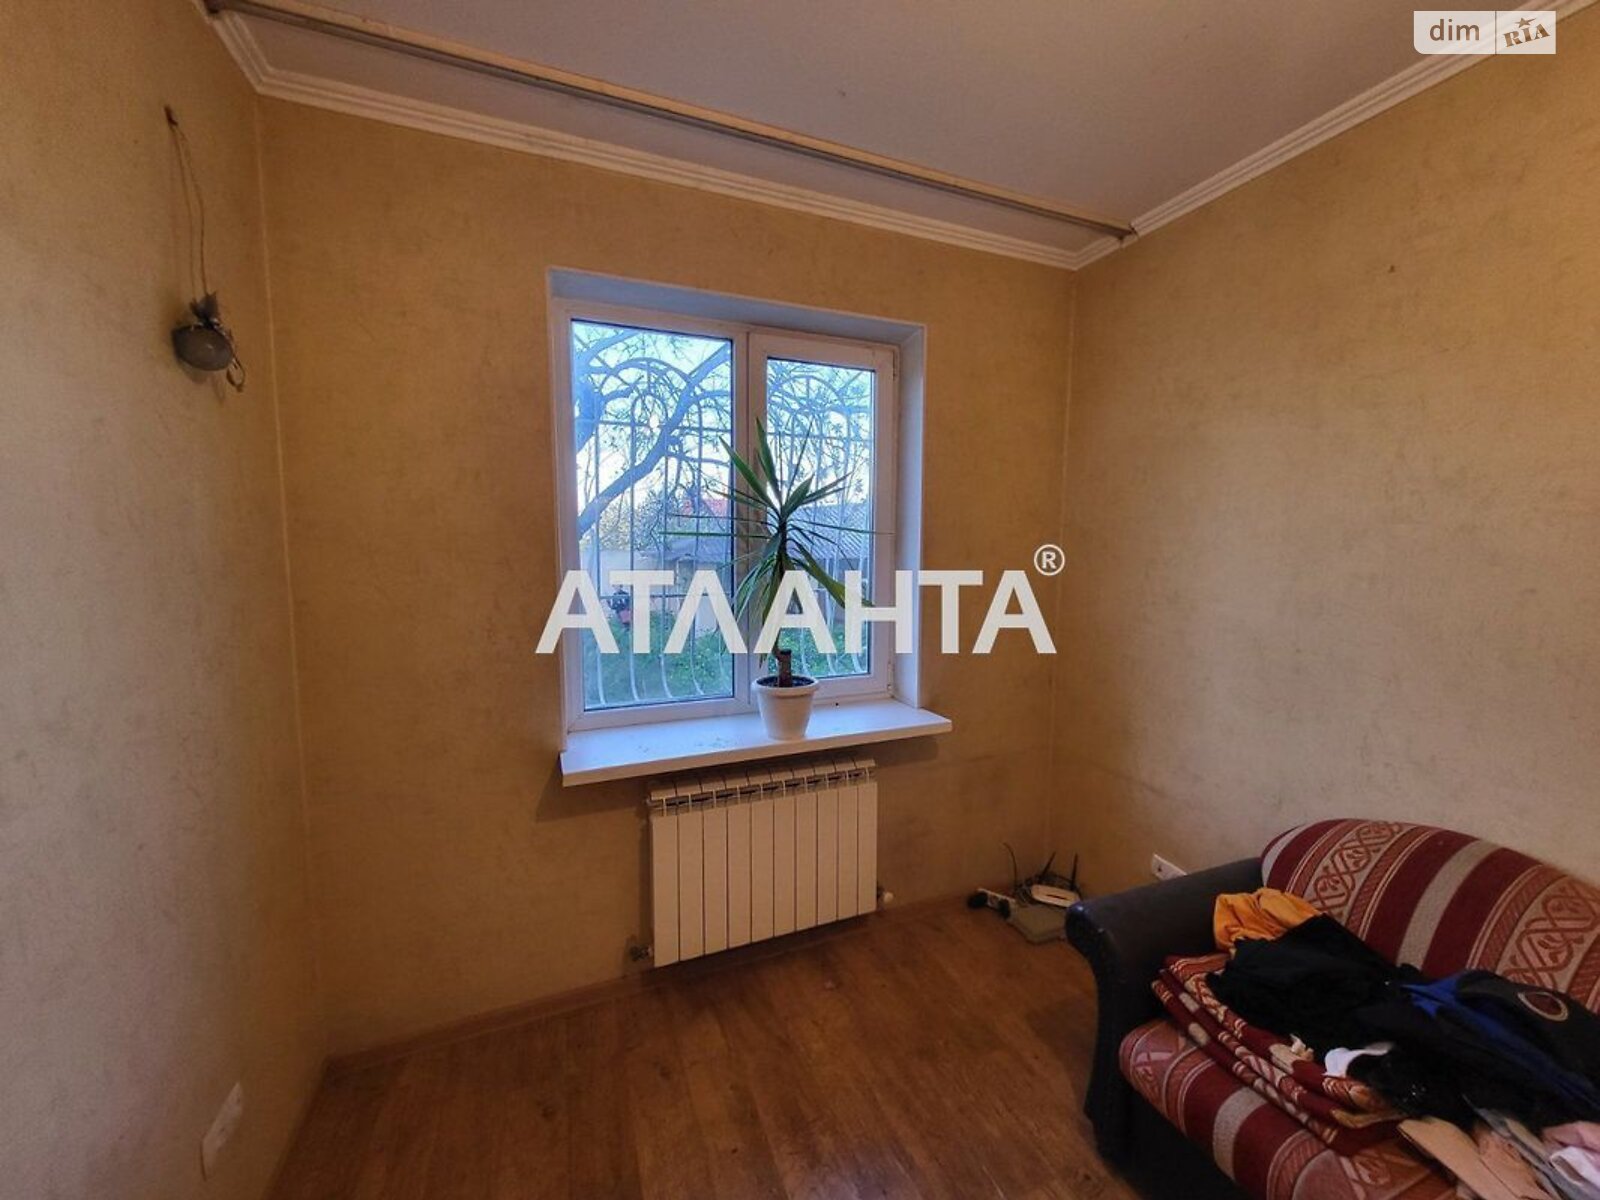 двухэтажный дом, 134.6 кв. м, ракушечник (ракушняк). Продажа в Одессе район Черноморка фото 1